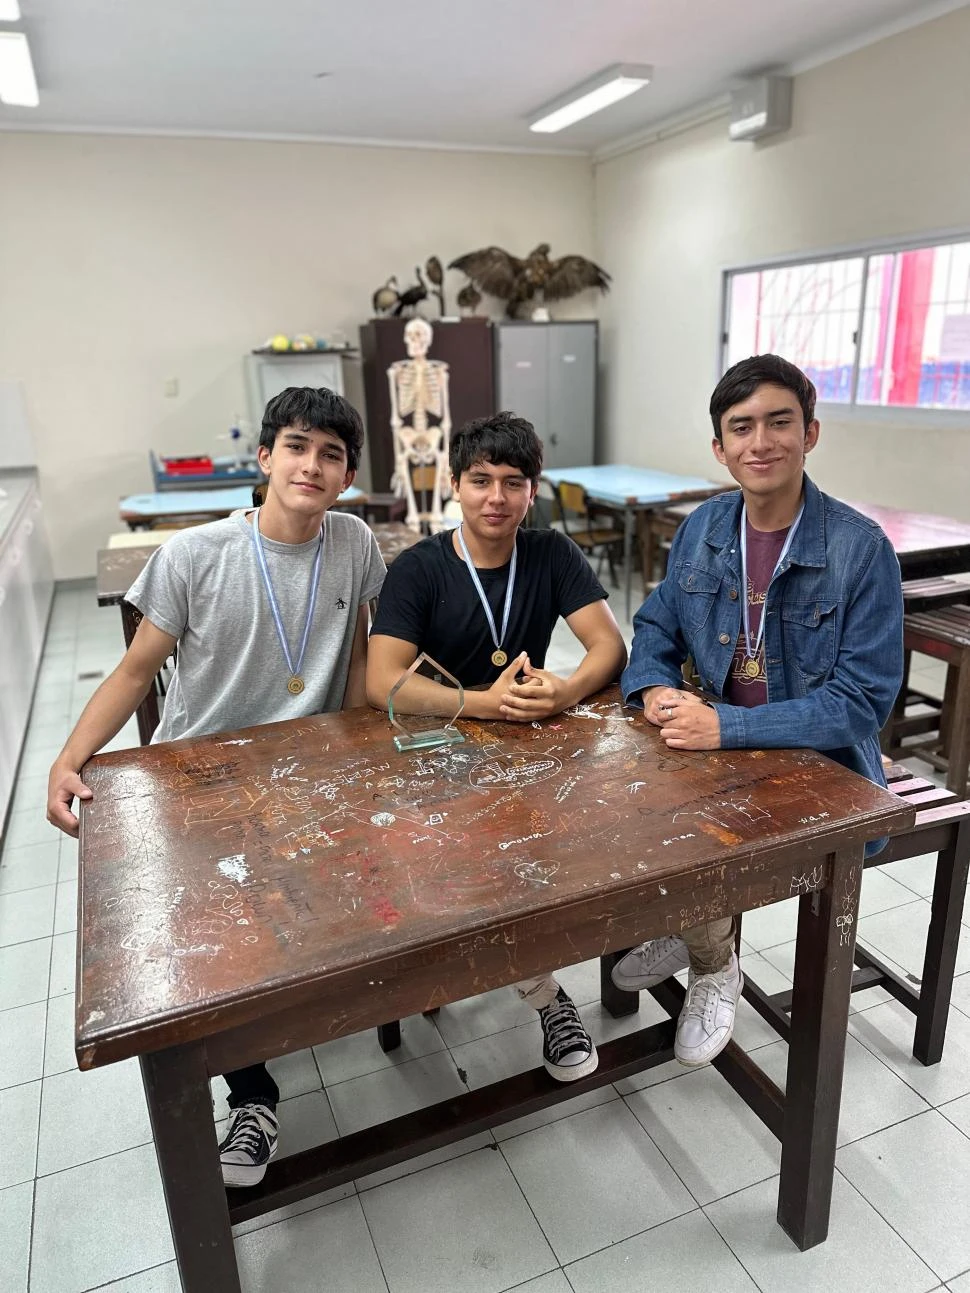 ORGULLOSOS DE SU LOGRO. Mateo Giordano, Lautaro Lo-Re y Ian Arrieta posan en el laboratorio del colegio.